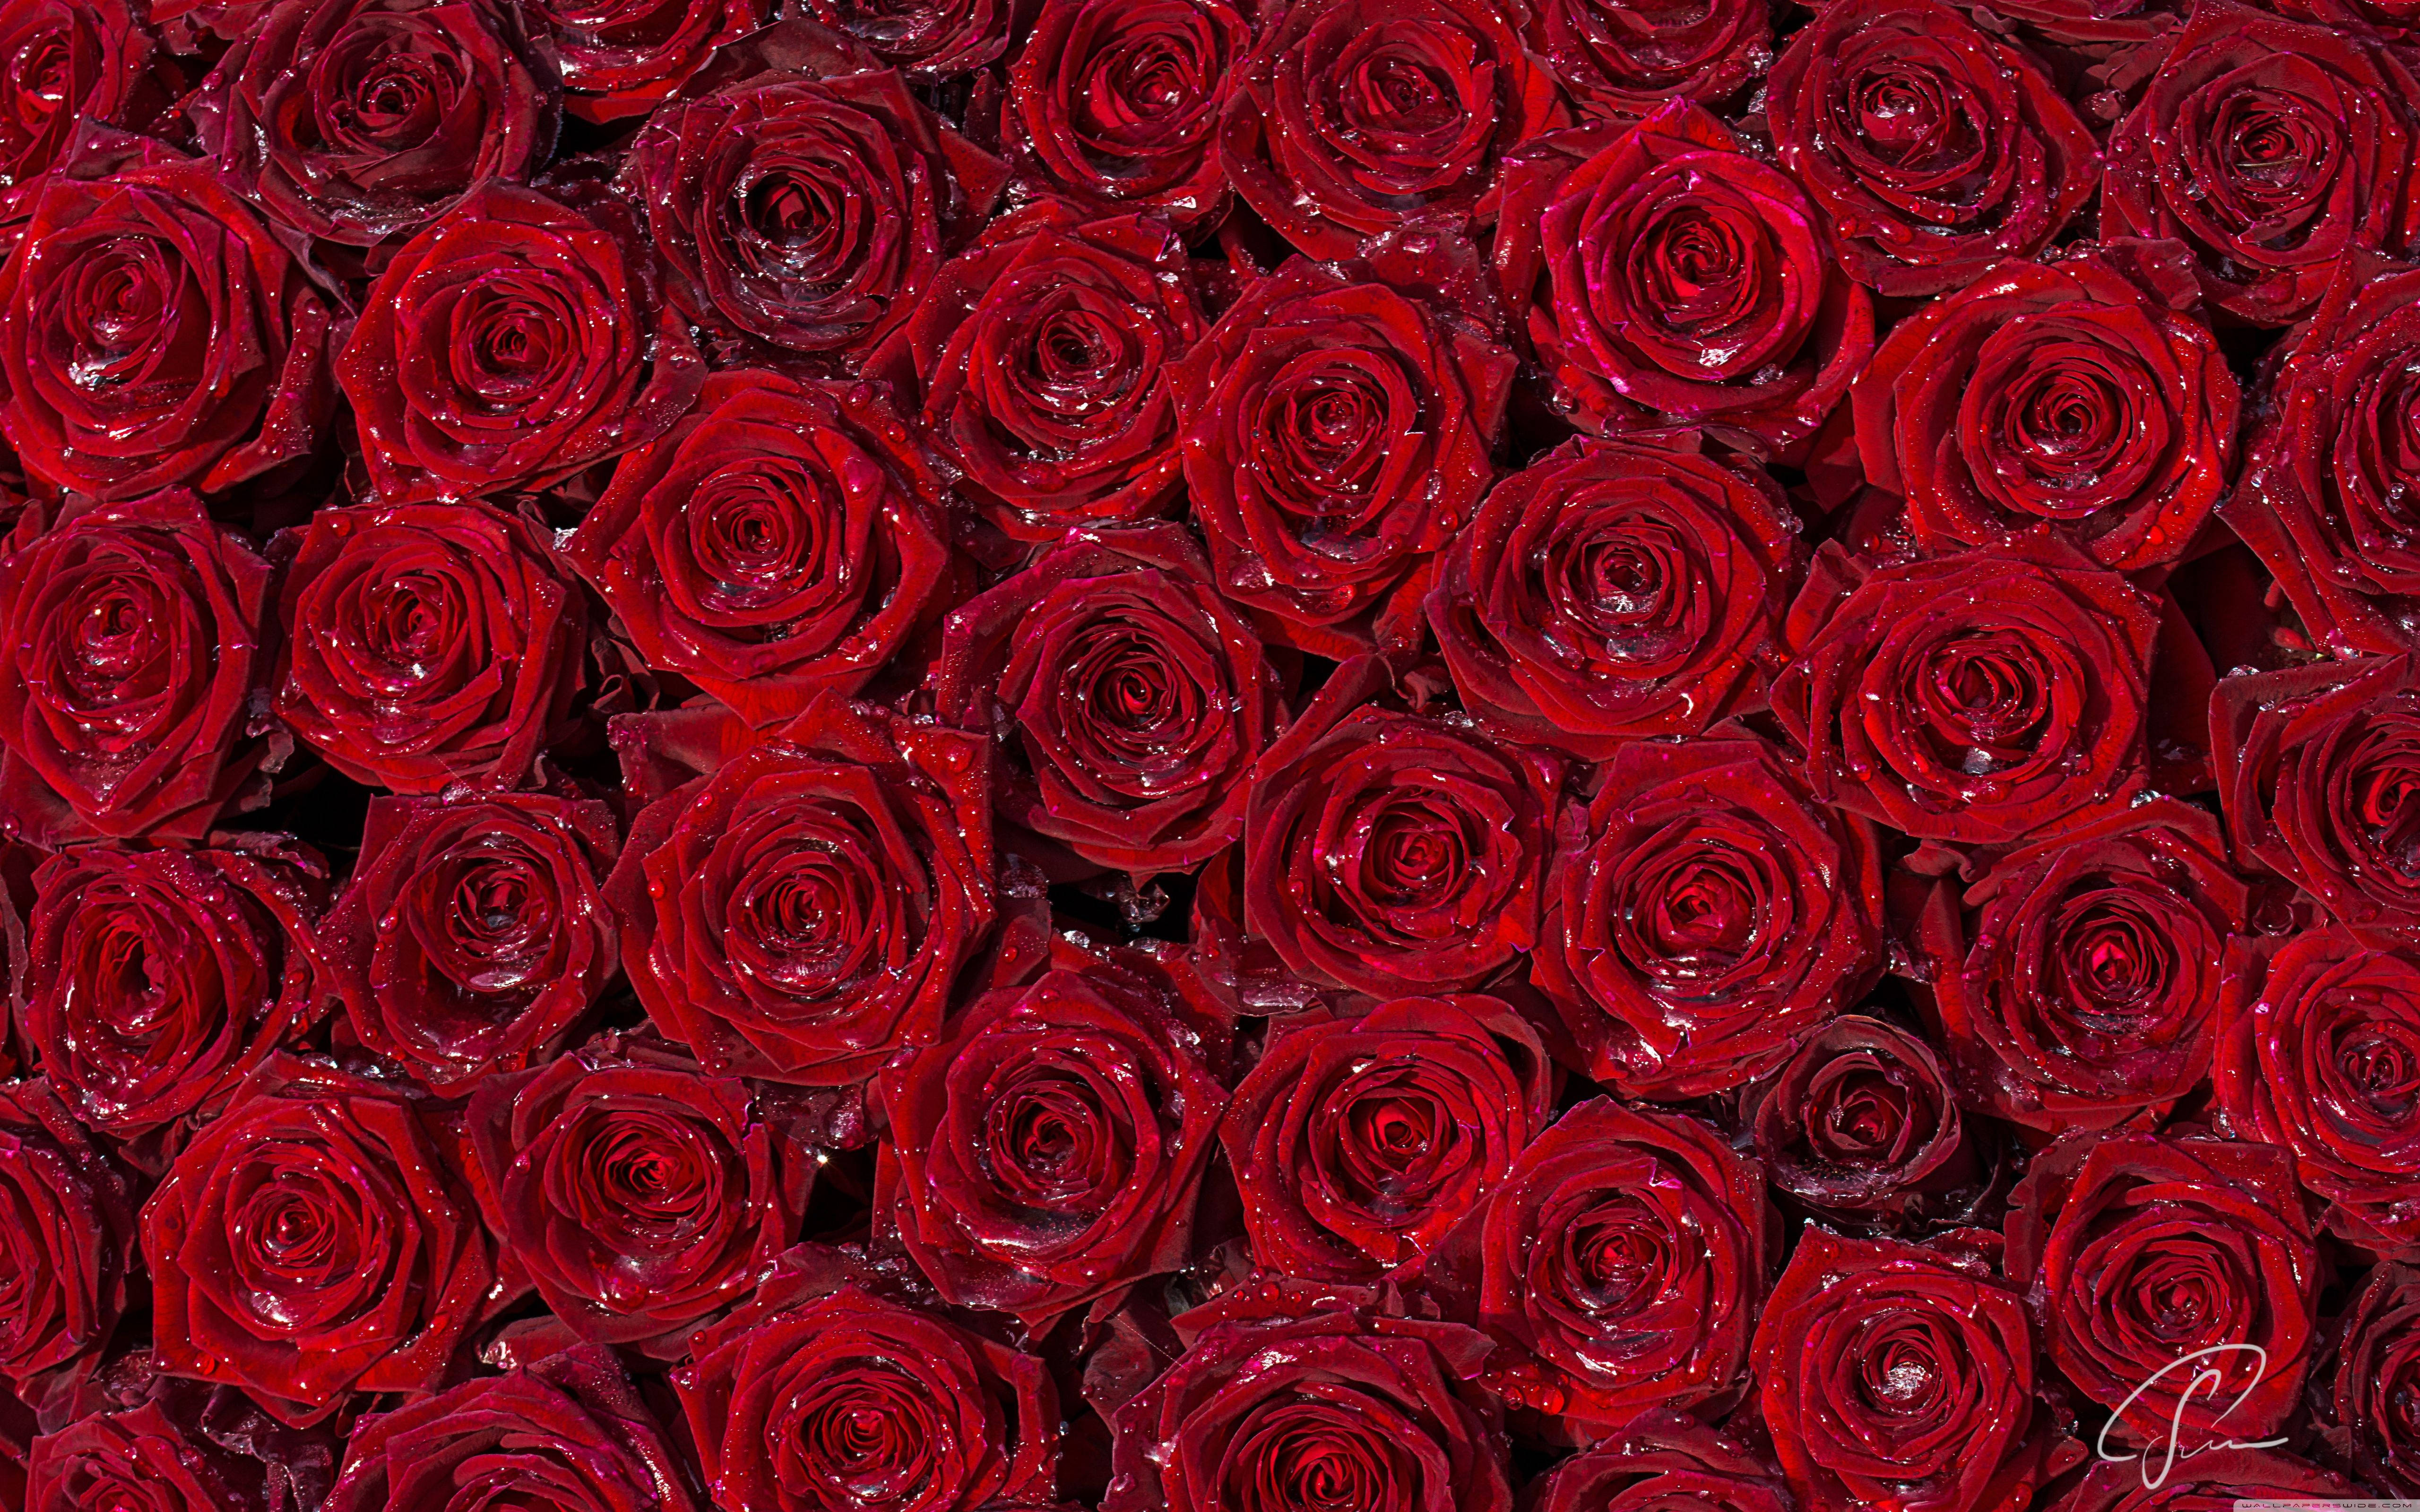 Hãy nhập vào thế giới tuyệt đẹp của những bông hoa hồng đầy màu sắc và sức sống với hình nền hoa hồng. Chúng ta hãy cảm nhận vẻ đẹp tuyệt vời của chúng cùng với màu sắc, hình dáng và mùi hương quyến rũ của các loài hoa hồng.